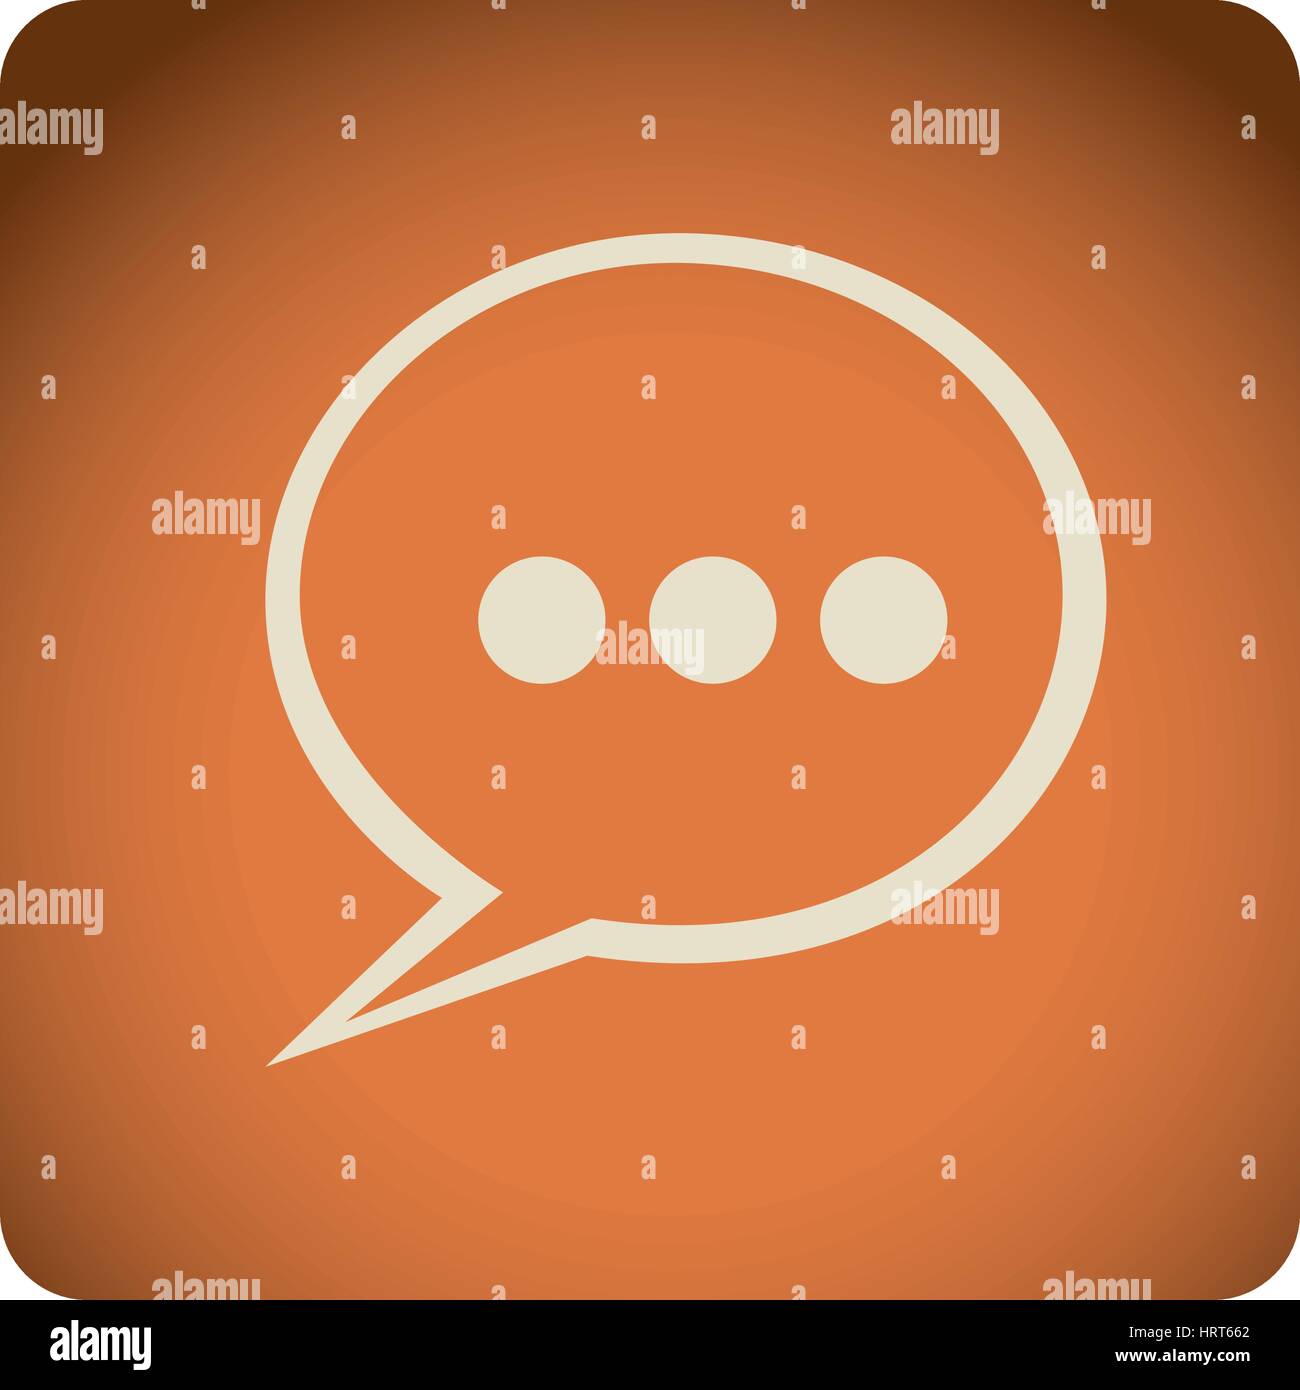 orange emblem chat bubble icon Stock Vector